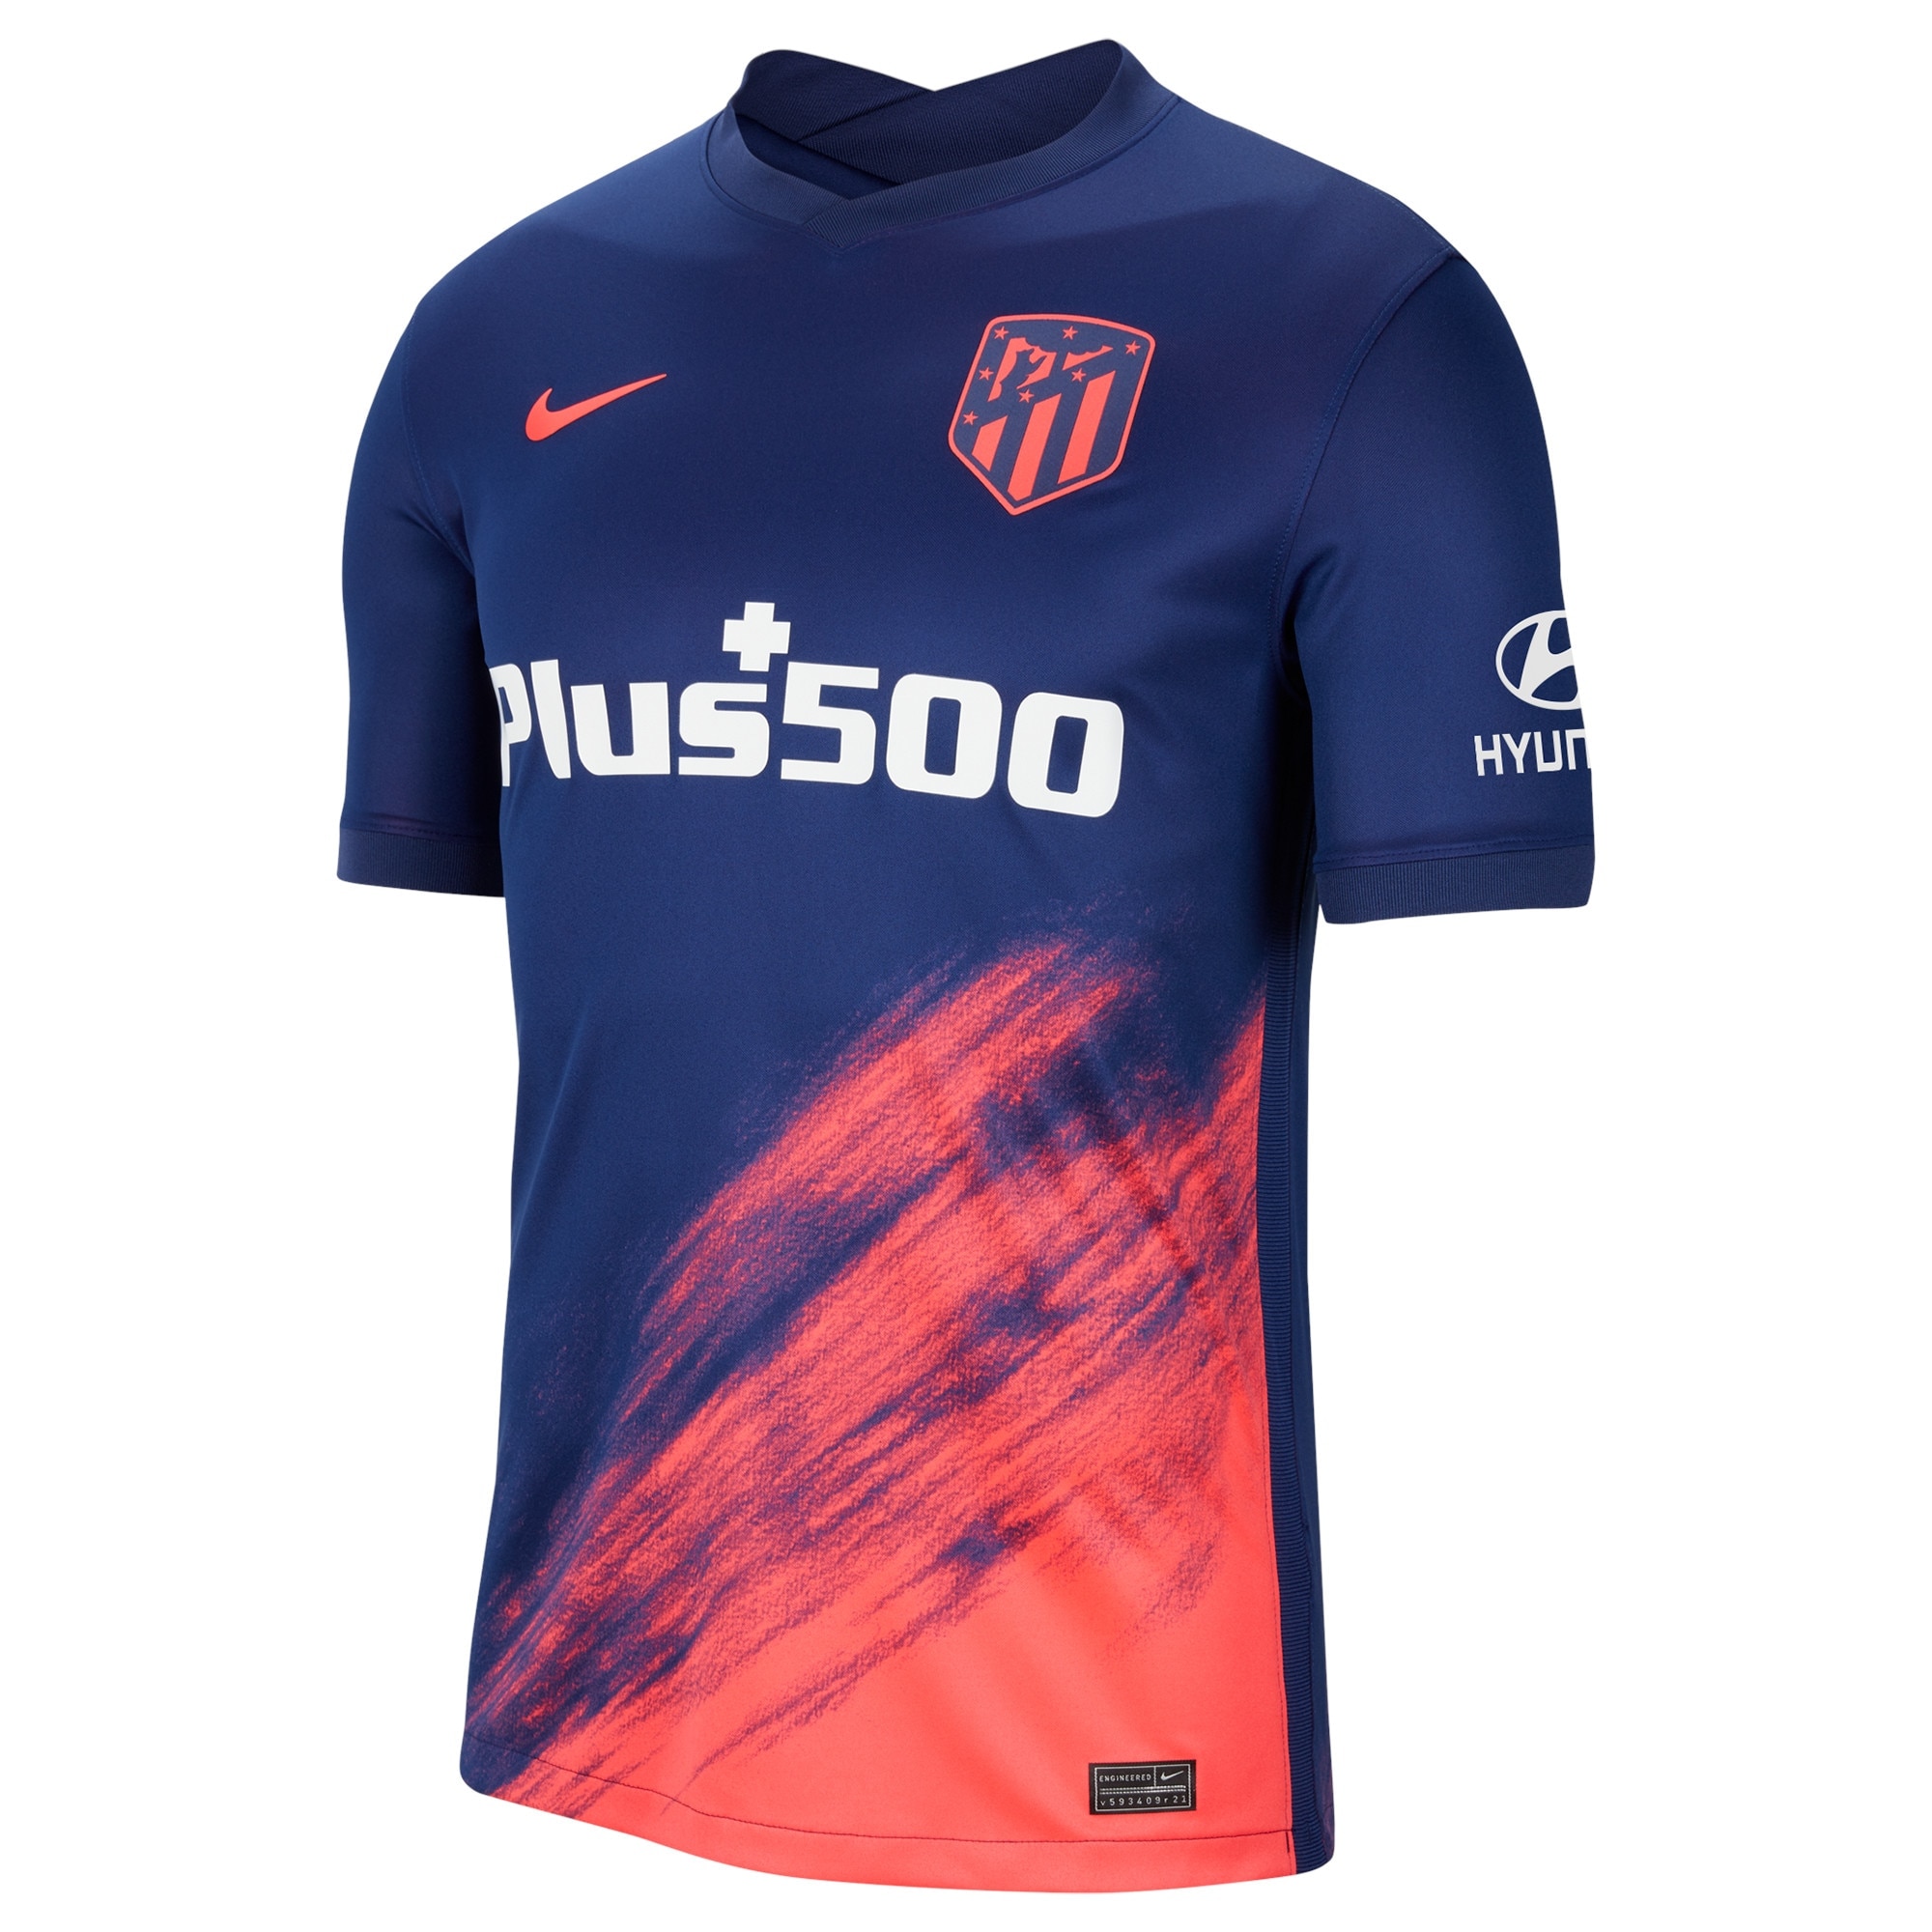 Atlético de Madrid Metropolitano Away Stadium Shirt 2021-22 with M.Hermoso 22 printing